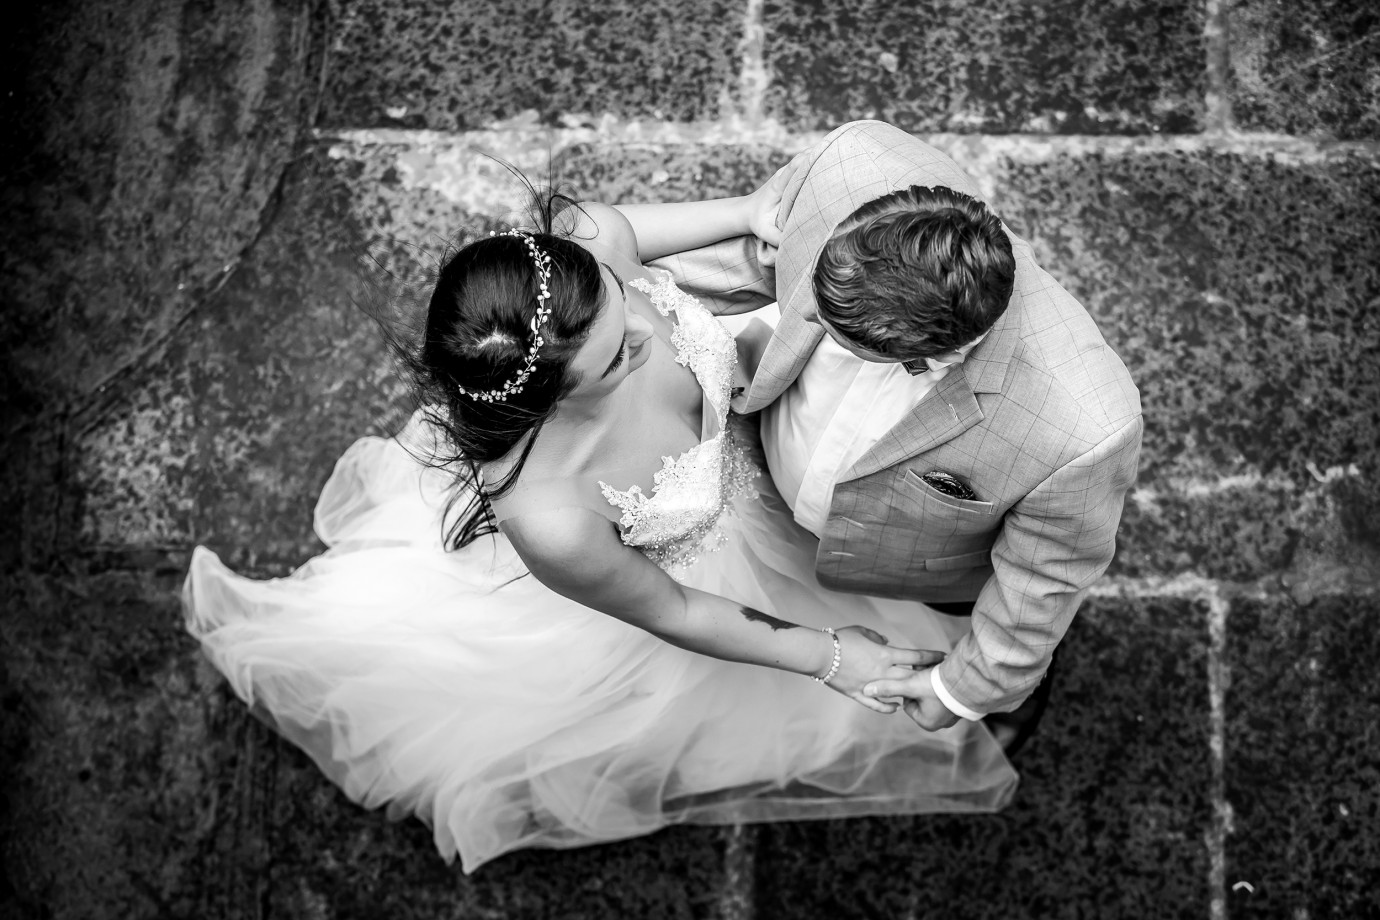 zdjęcia wroclaw fotograf masterfilm portfolio zdjecia slubne inspiracje wesele plener slubny sesja slubna